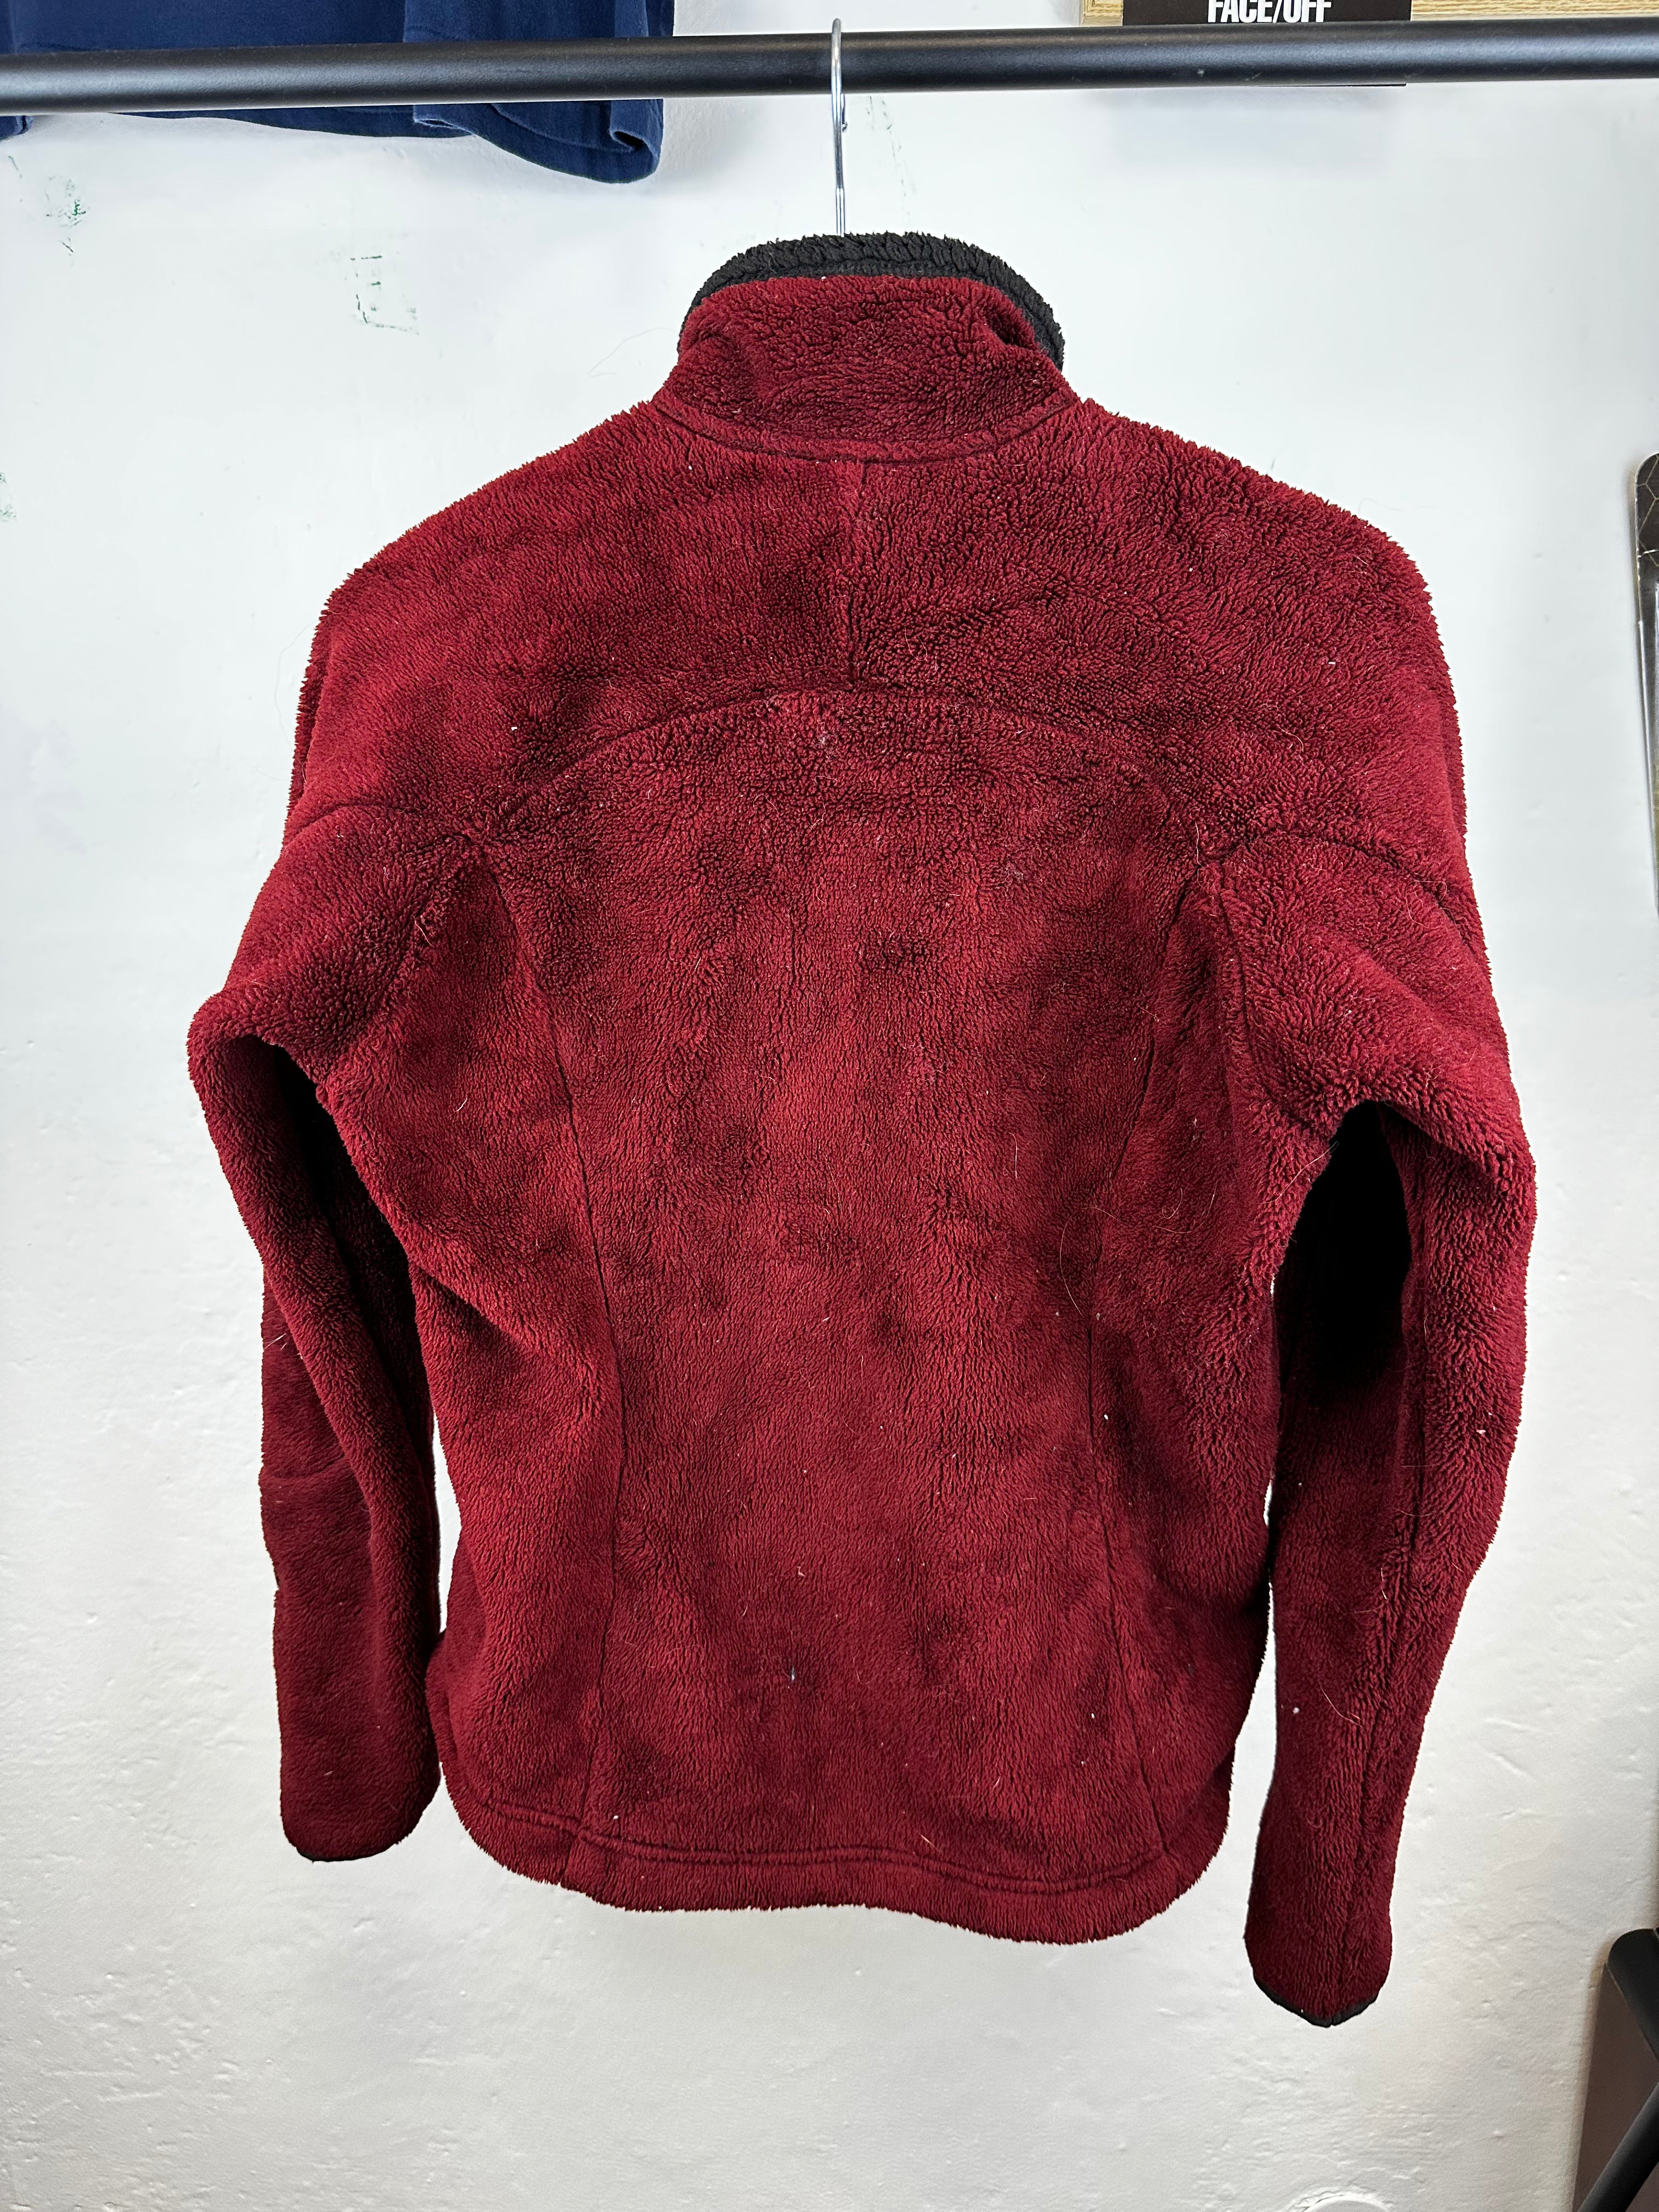 Patagonia Fleece Retro Jacket - size M WMNS